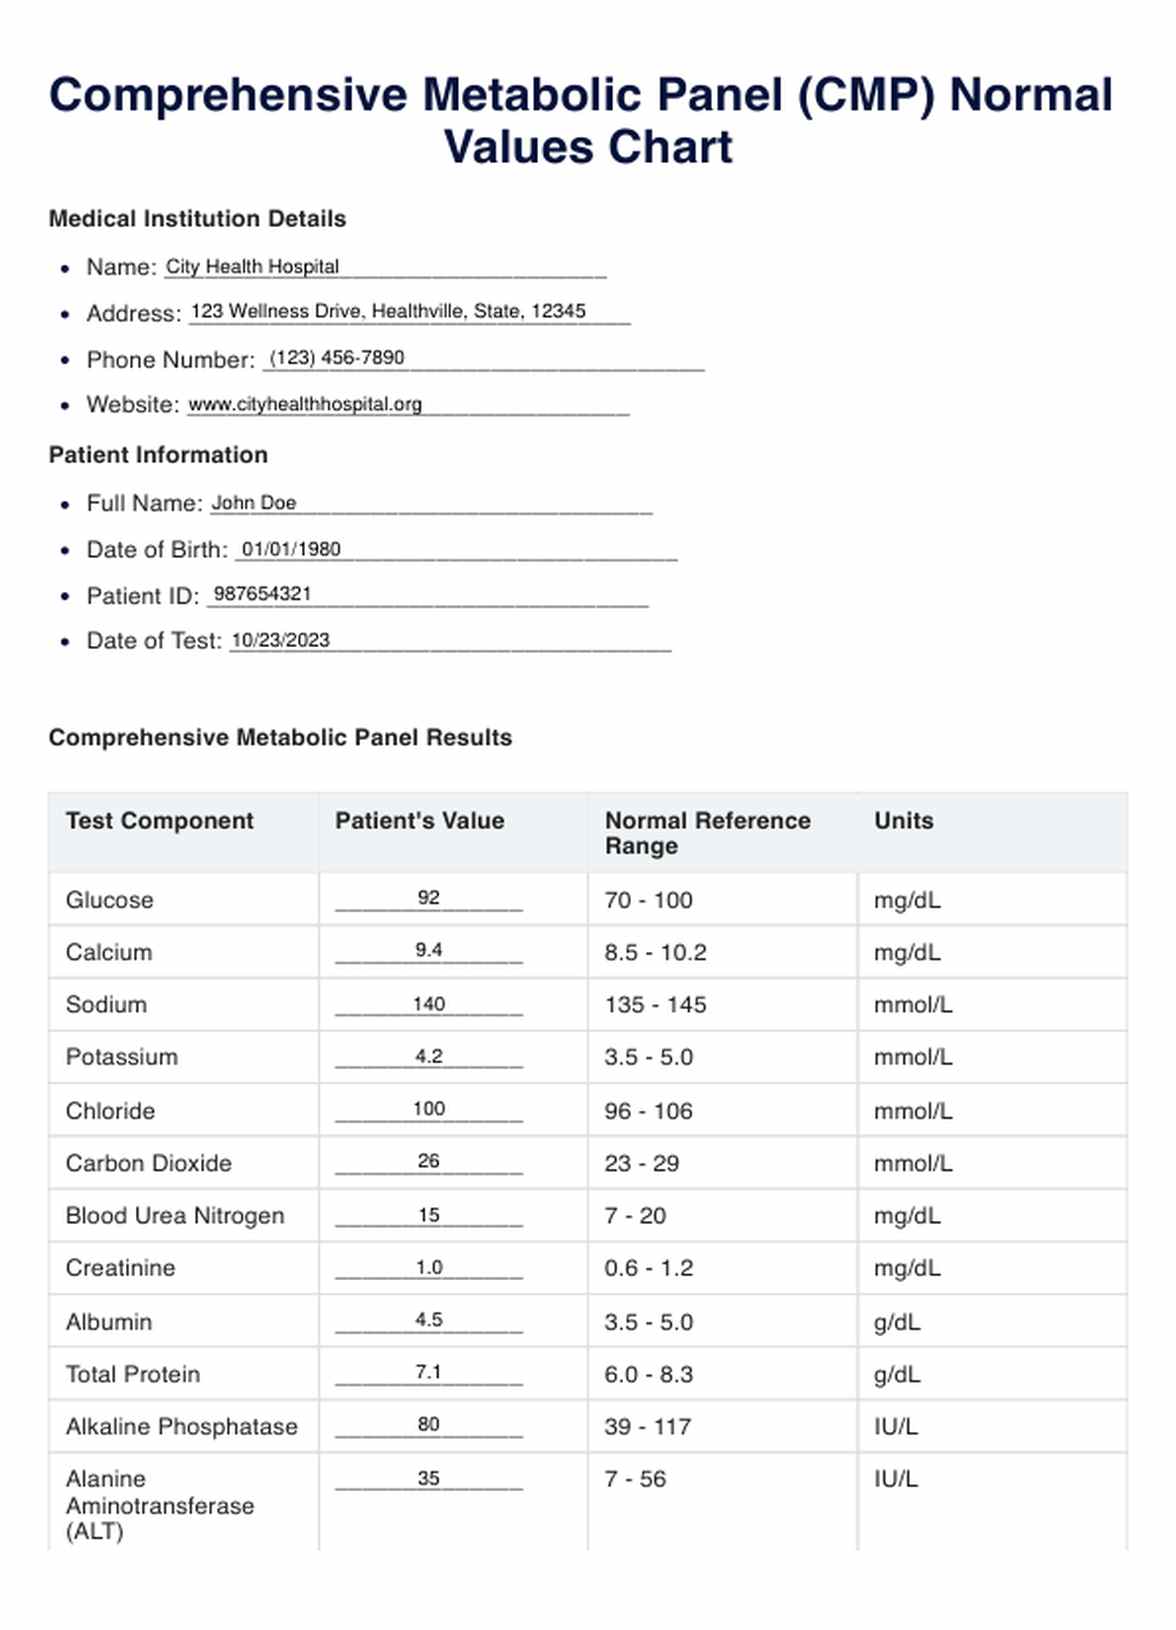 Gráfico de Valores normales del PMC (Panel Metabólico Completo) PDF Example